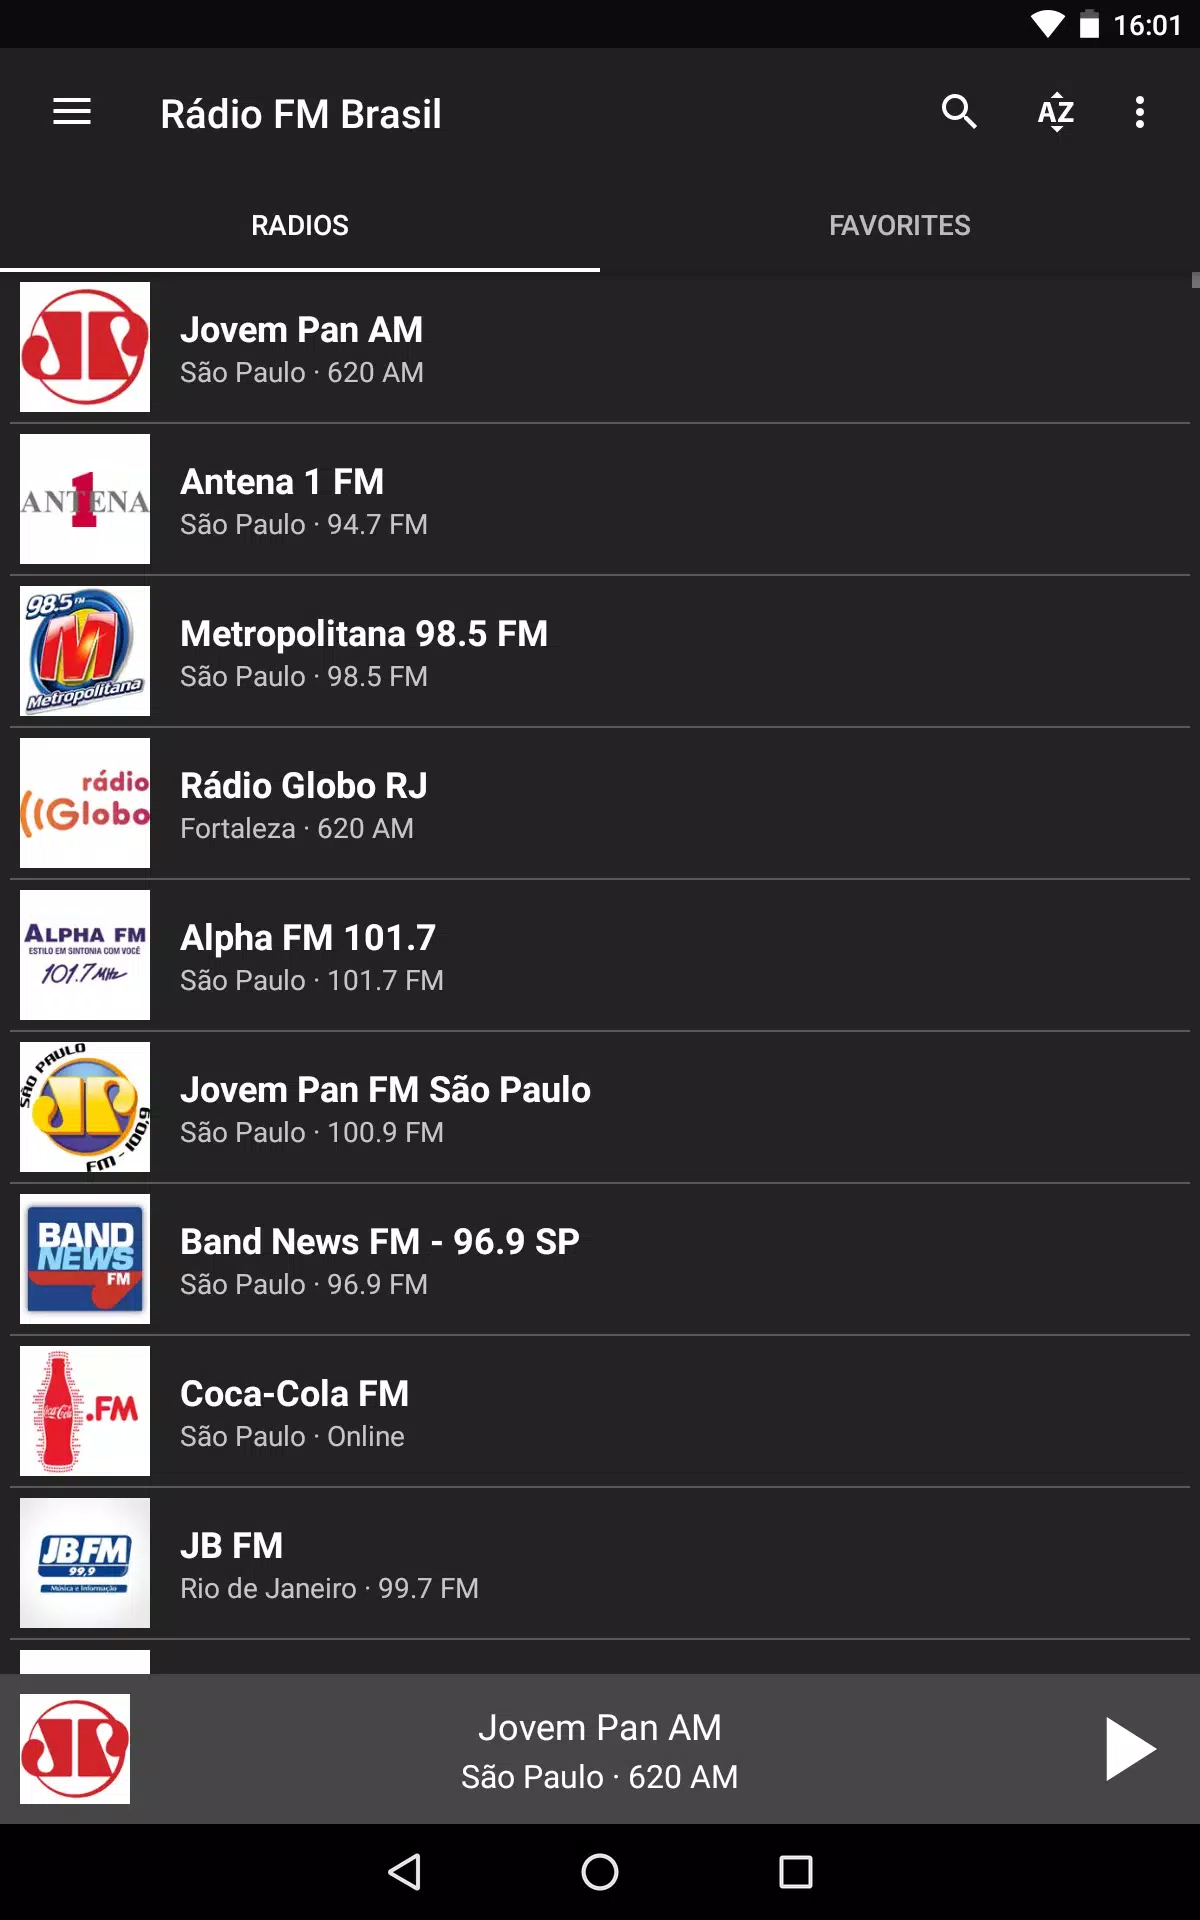 Rádio FM Brasil for Android - APK Download